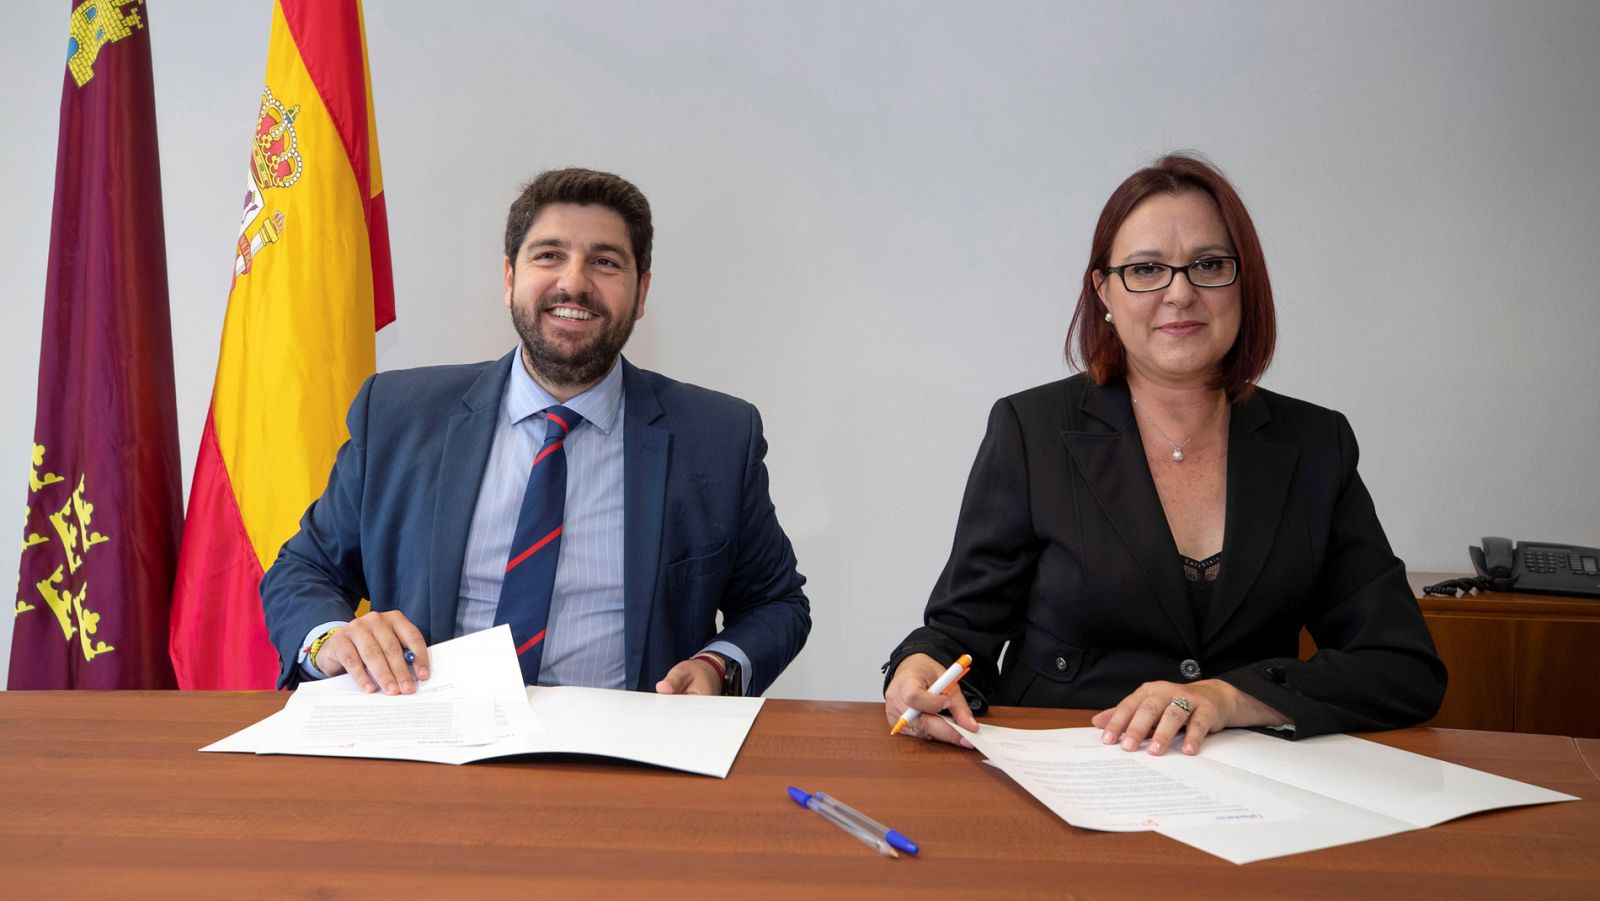 El presidente en funciones de la Región de Murcia Fernando López Miras (PP) y la diputada de Ciudadanos Isabel Franco, durante la firma del acuerdo global de Gobierno.